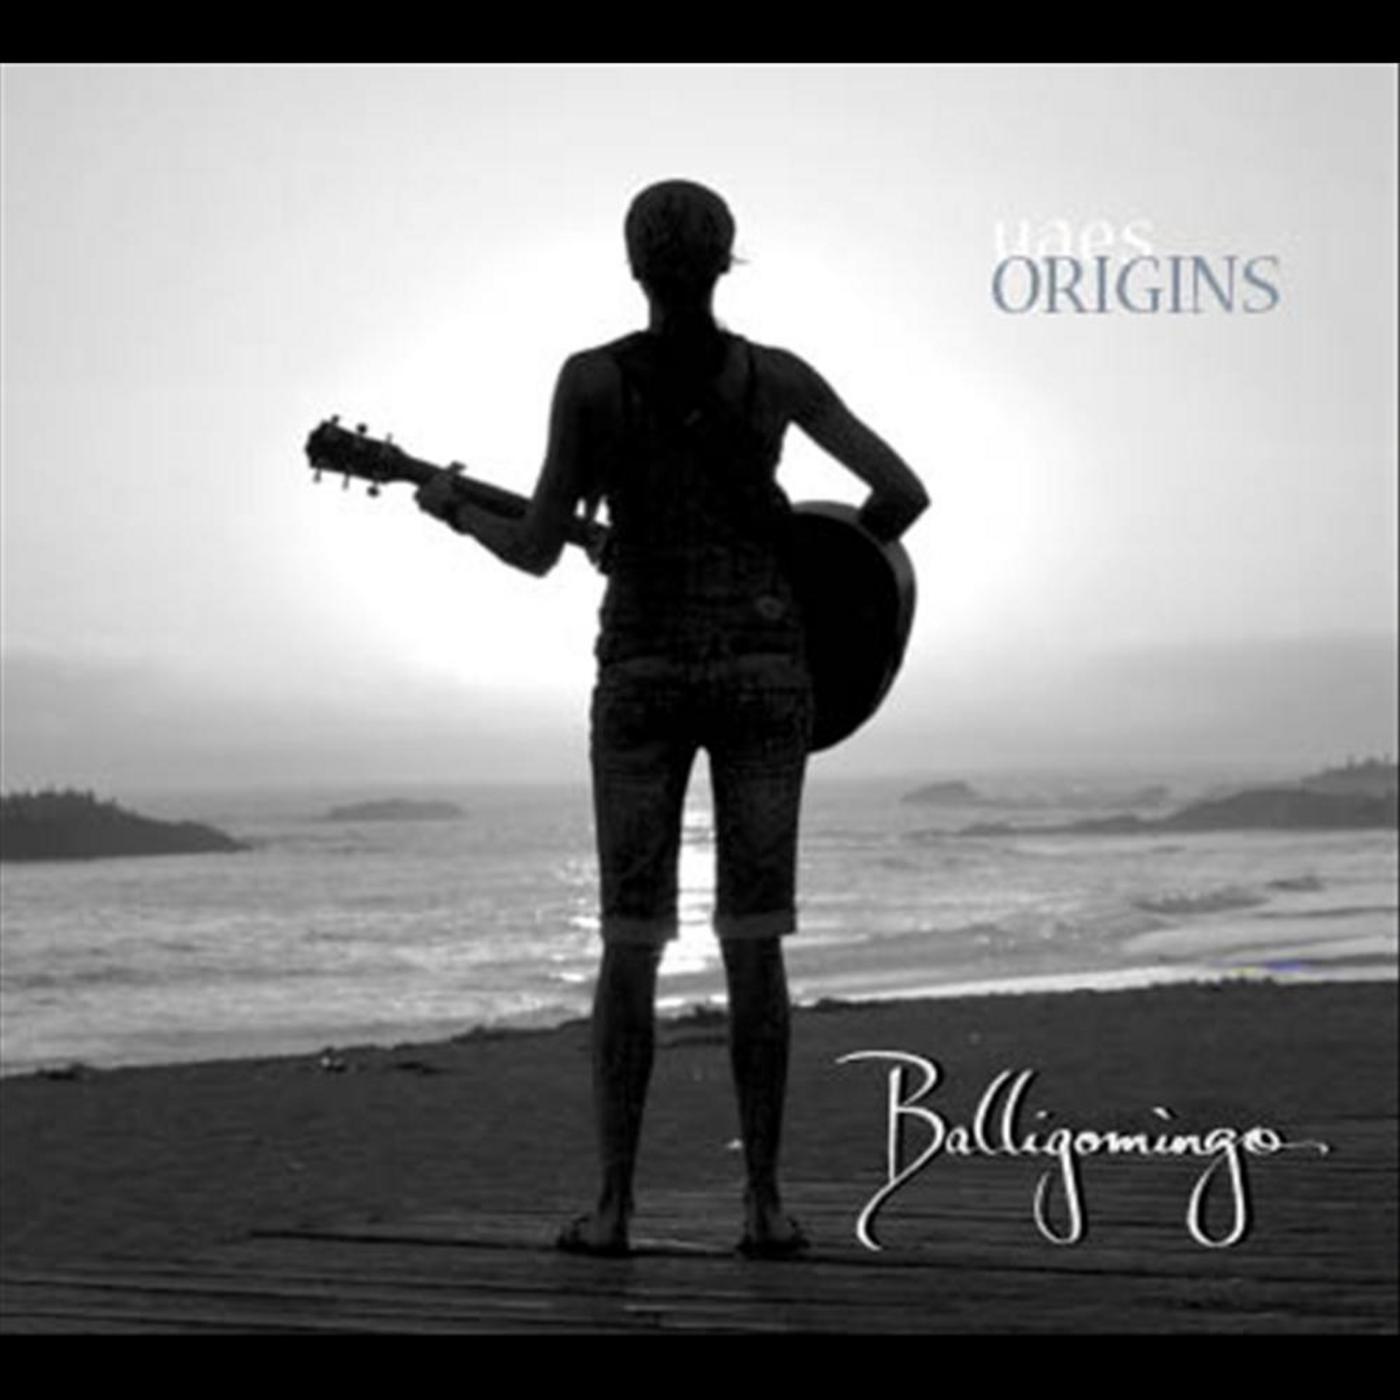 Balligomingo - Dream Believer (Acoustic Mix)